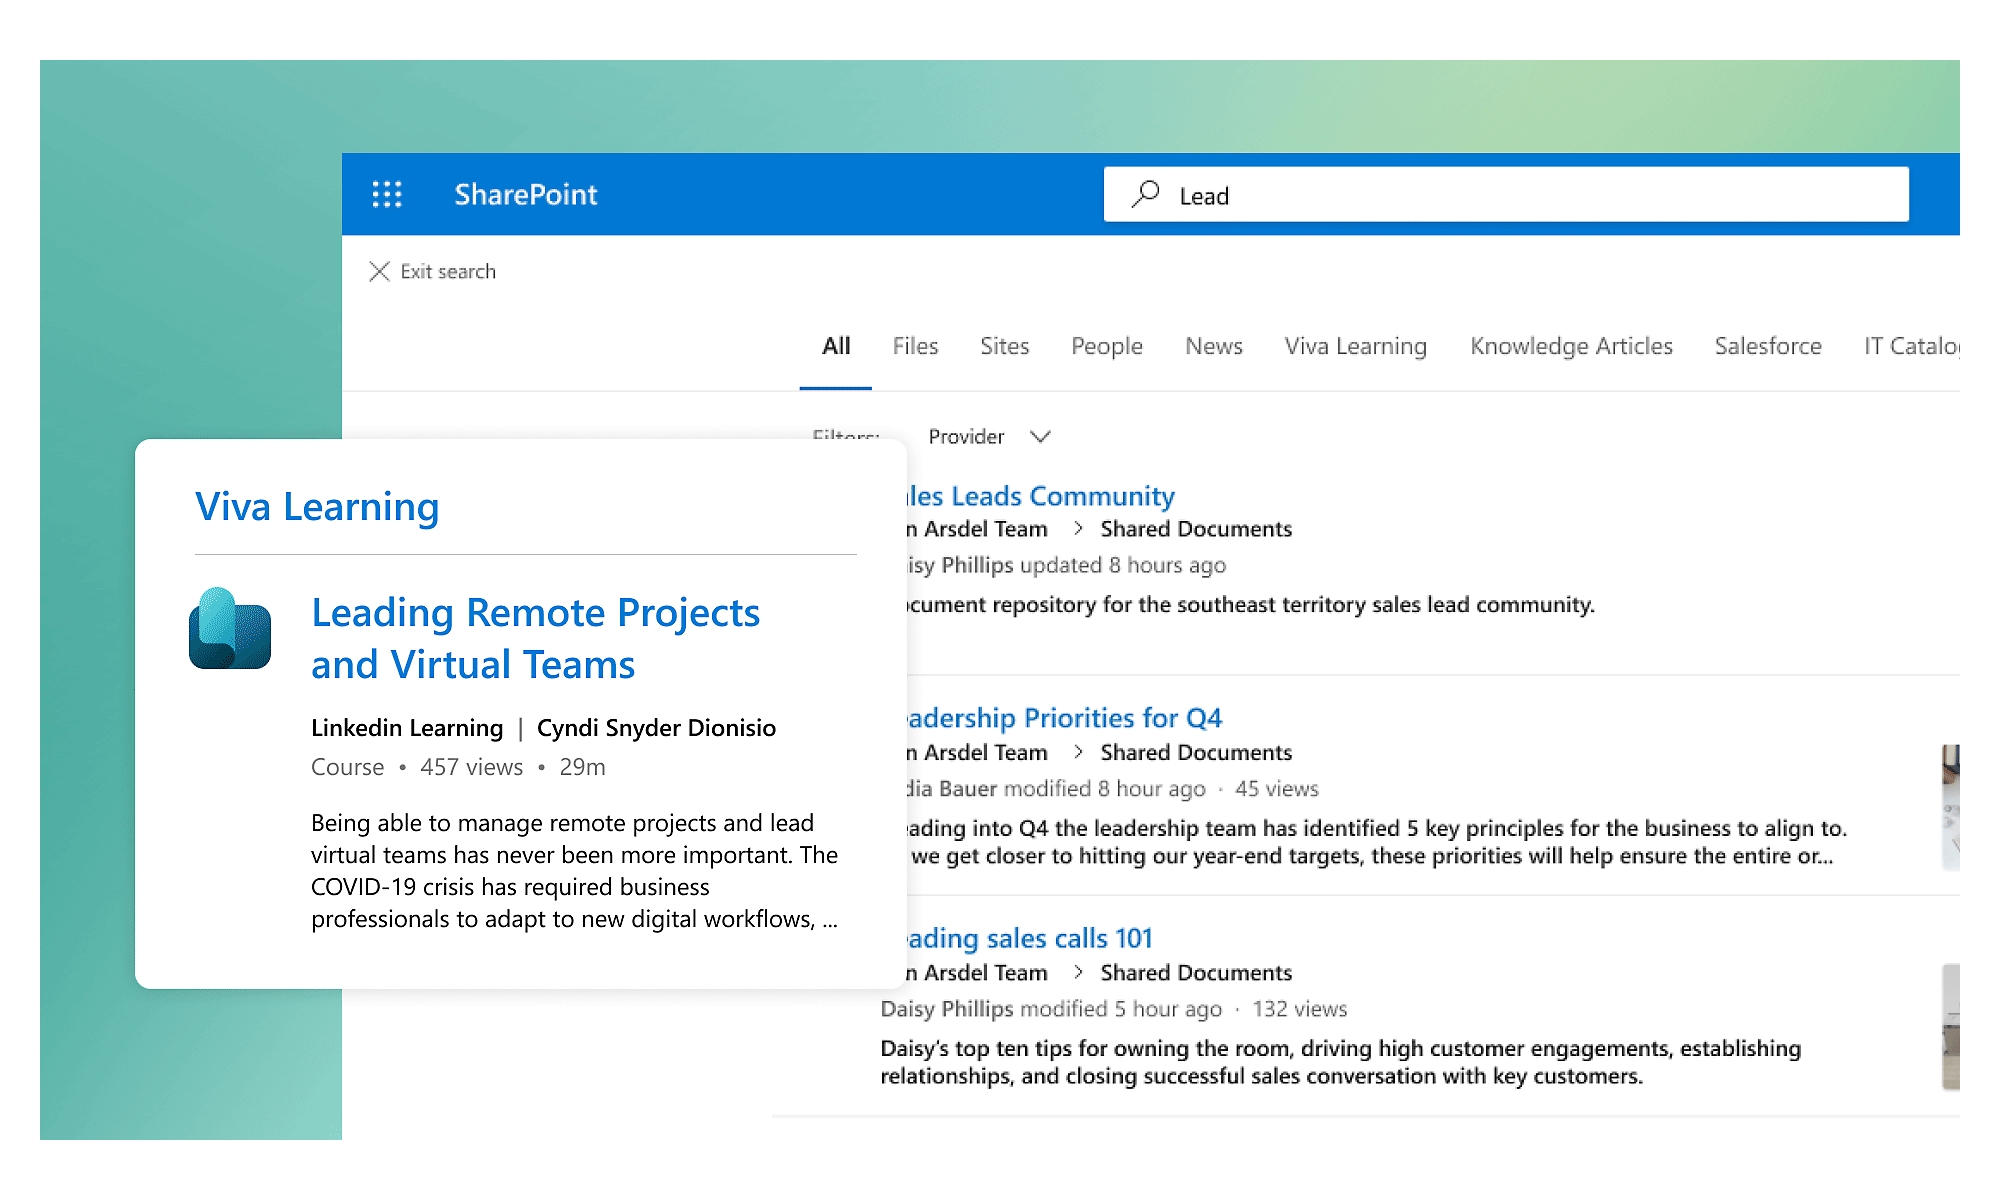 En søgning i SharePoint efter "Lead", der viser relaterede indholdsresultater fra Viva Learning.